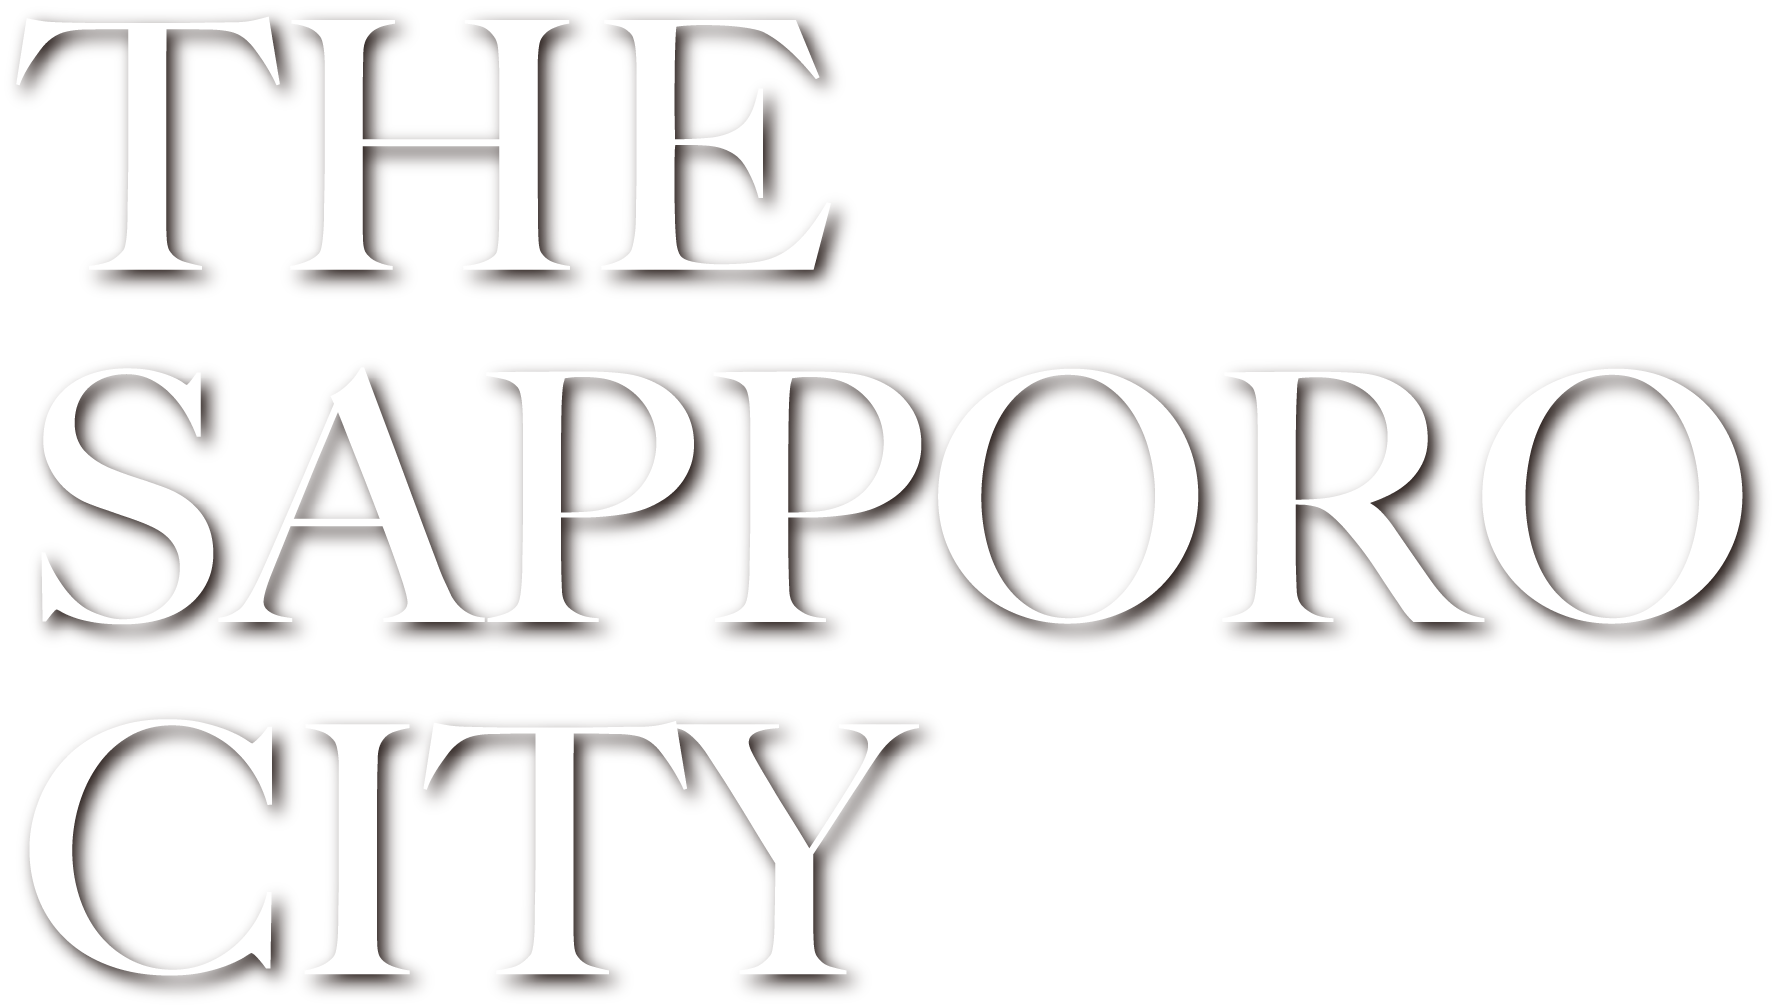 THE SAPPORO CITY